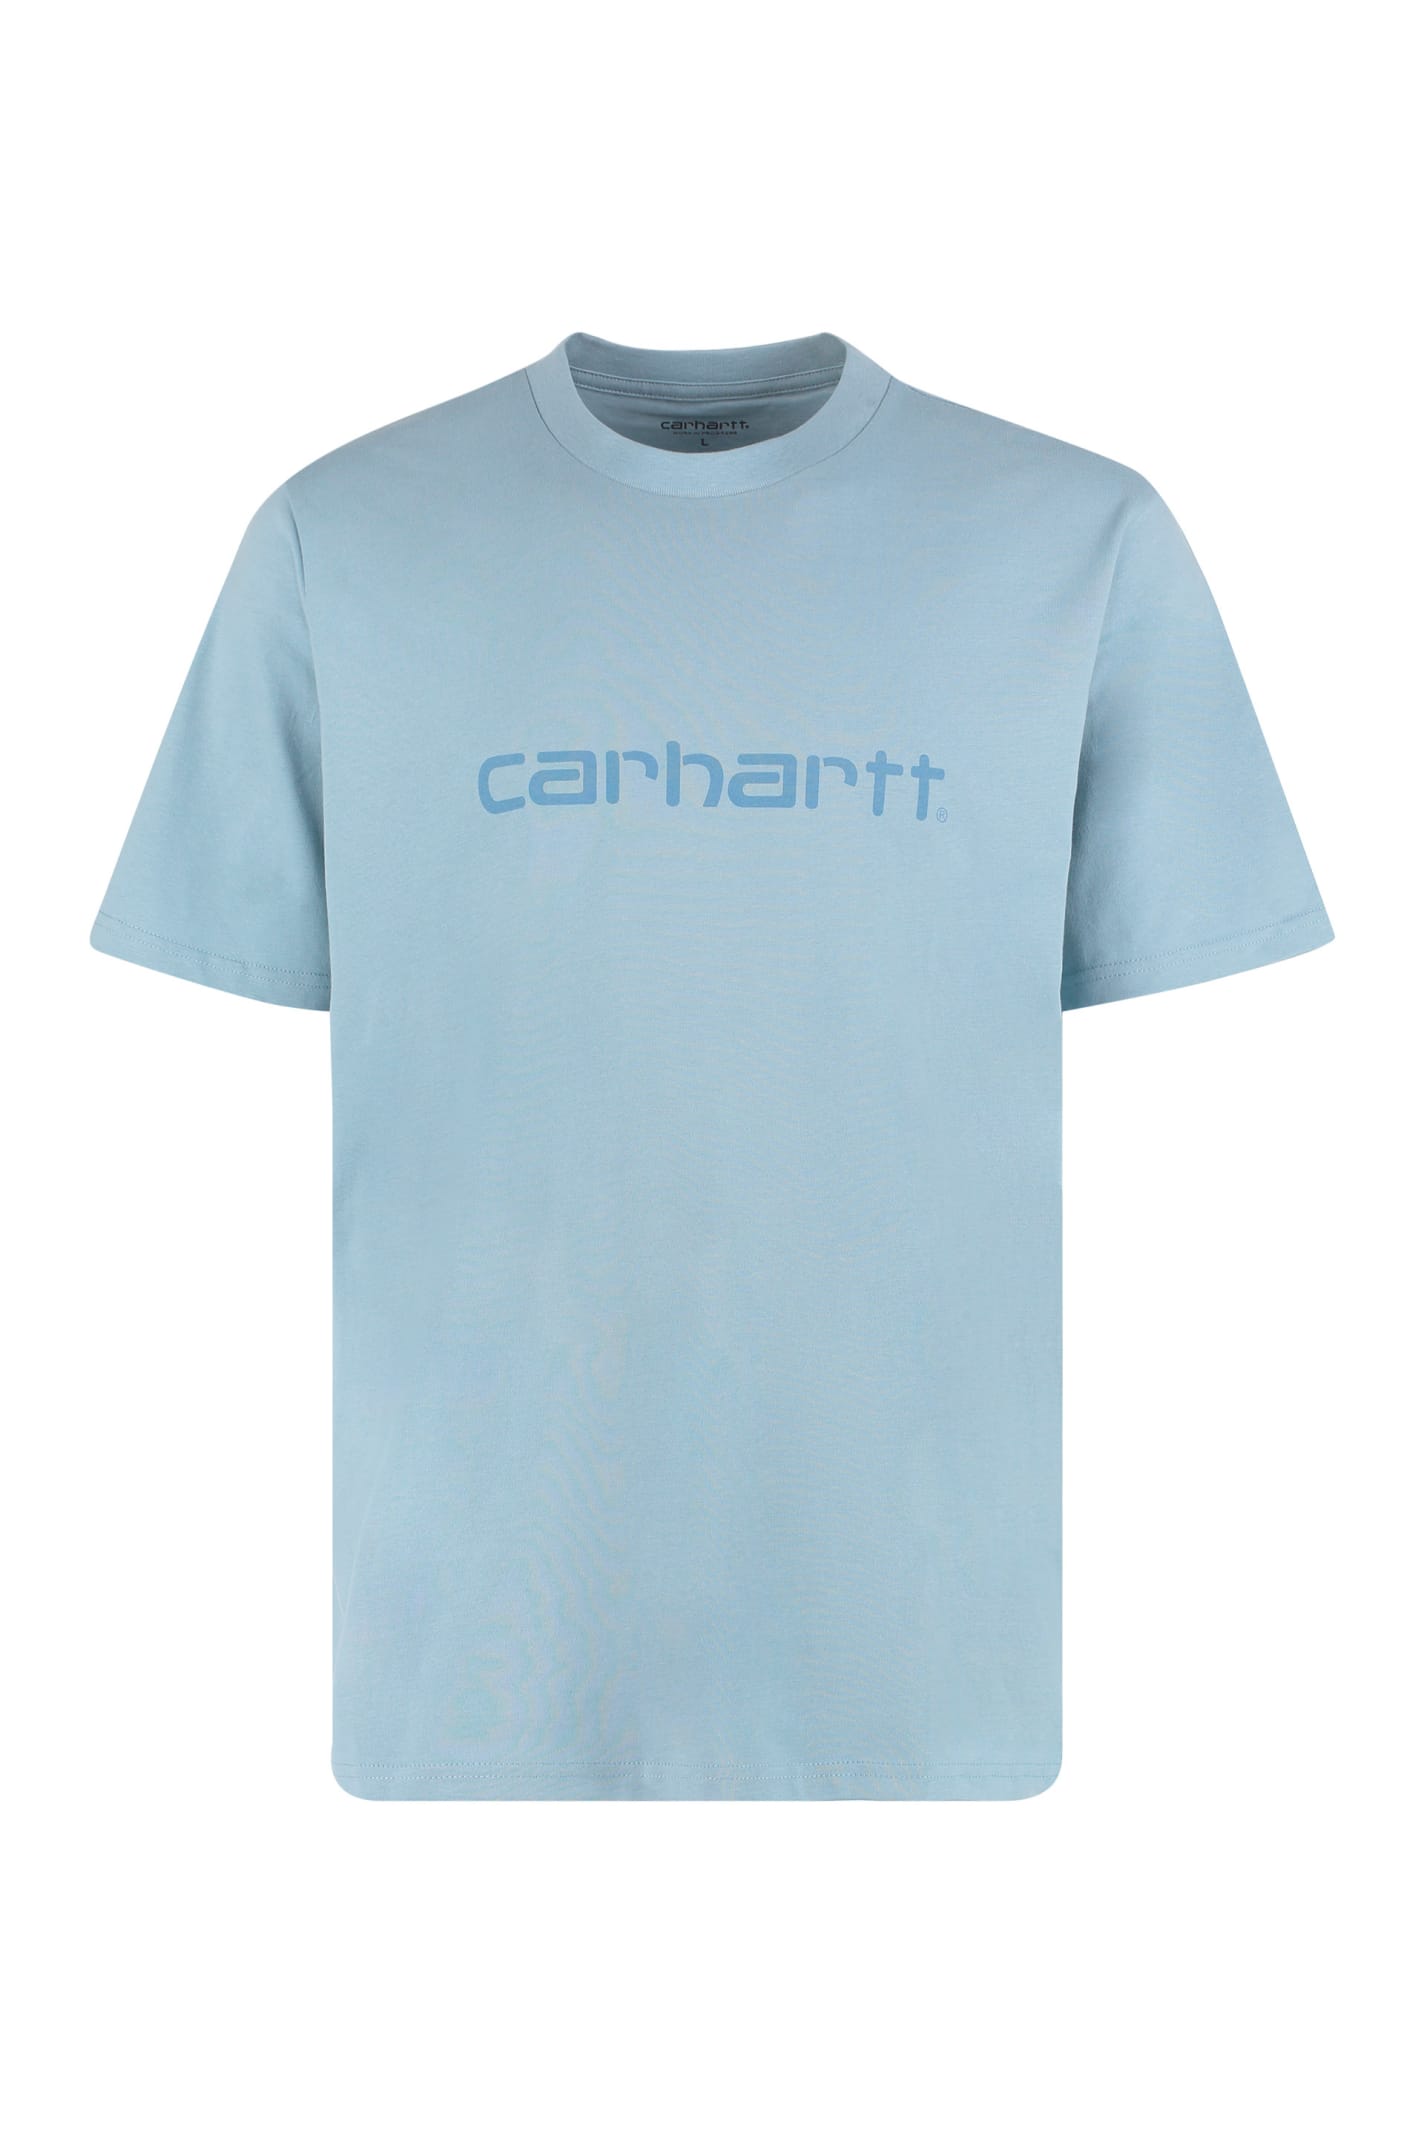 Carhartt Cotton Crew-neck T-shirt In Blue | ModeSens